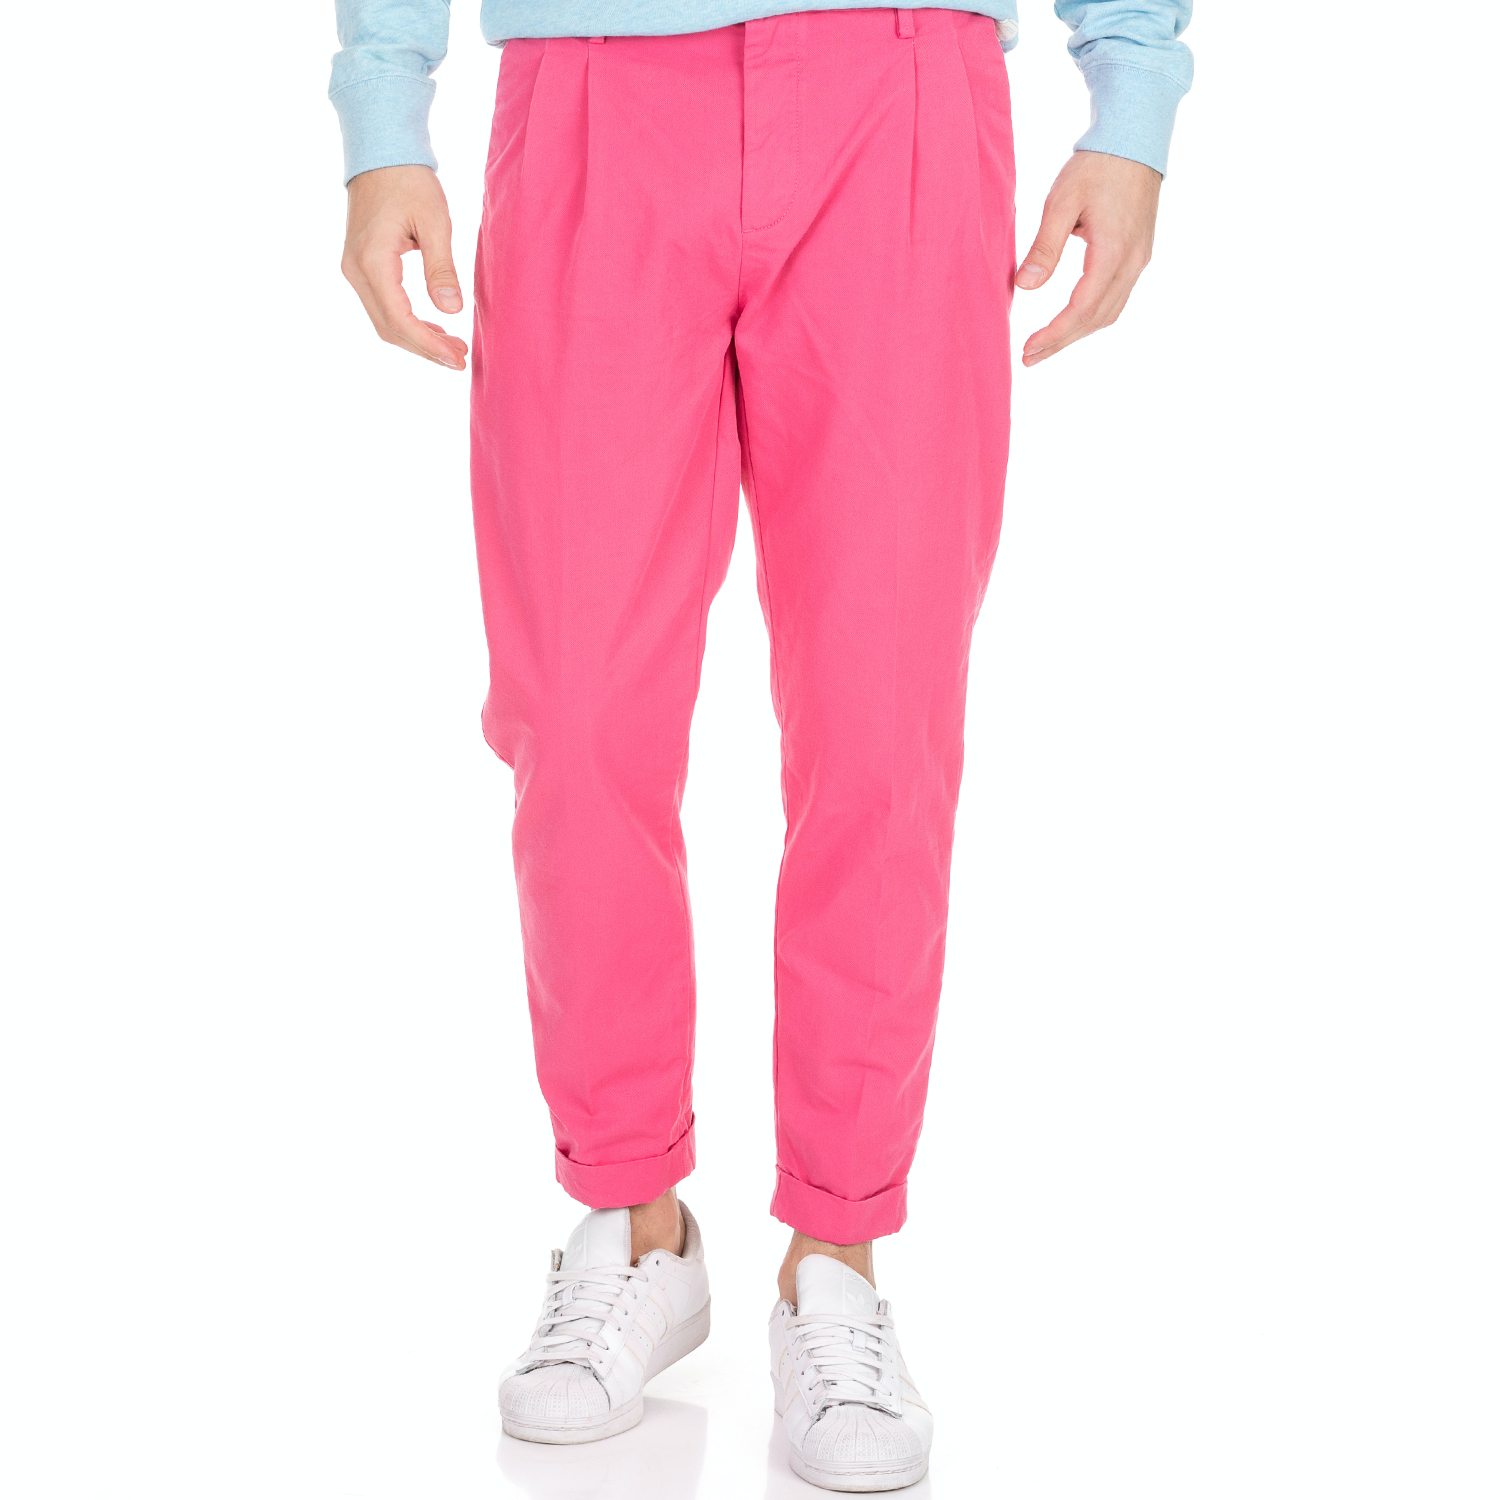 Ανδρικά/Ρούχα/Παντελόνια/Chinos SCOTCH & SODA - Γυναικείο παντελόνι SCOTCH & SODA ροζ